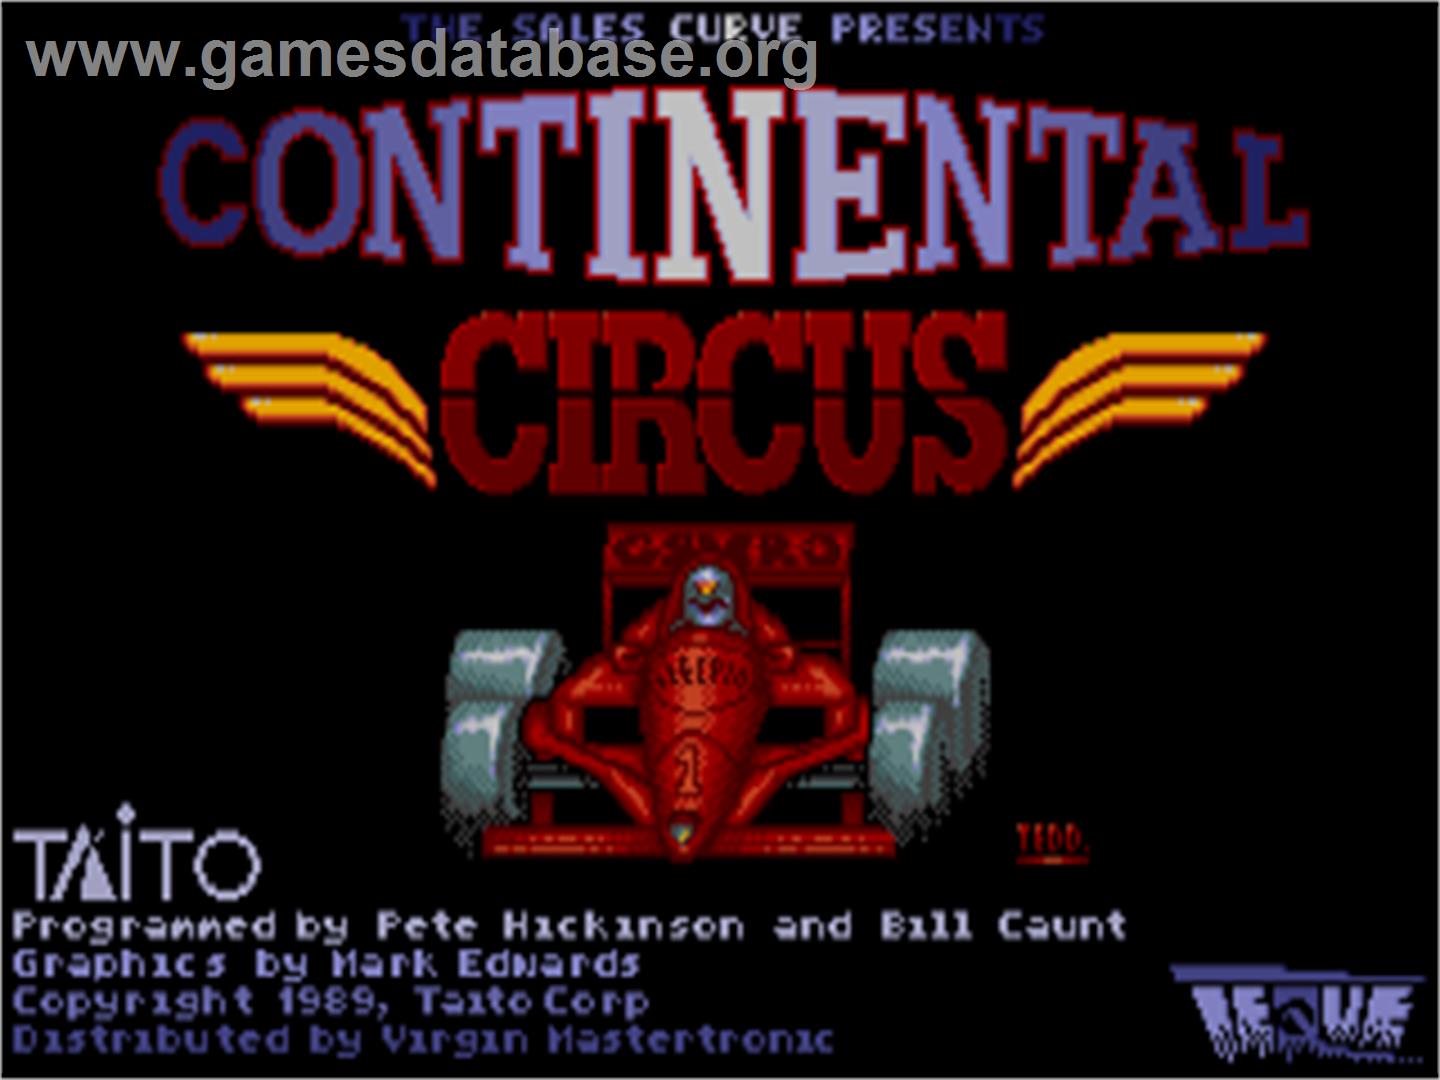 Continental Circus - Commodore Amiga - Artwork - Title Screen